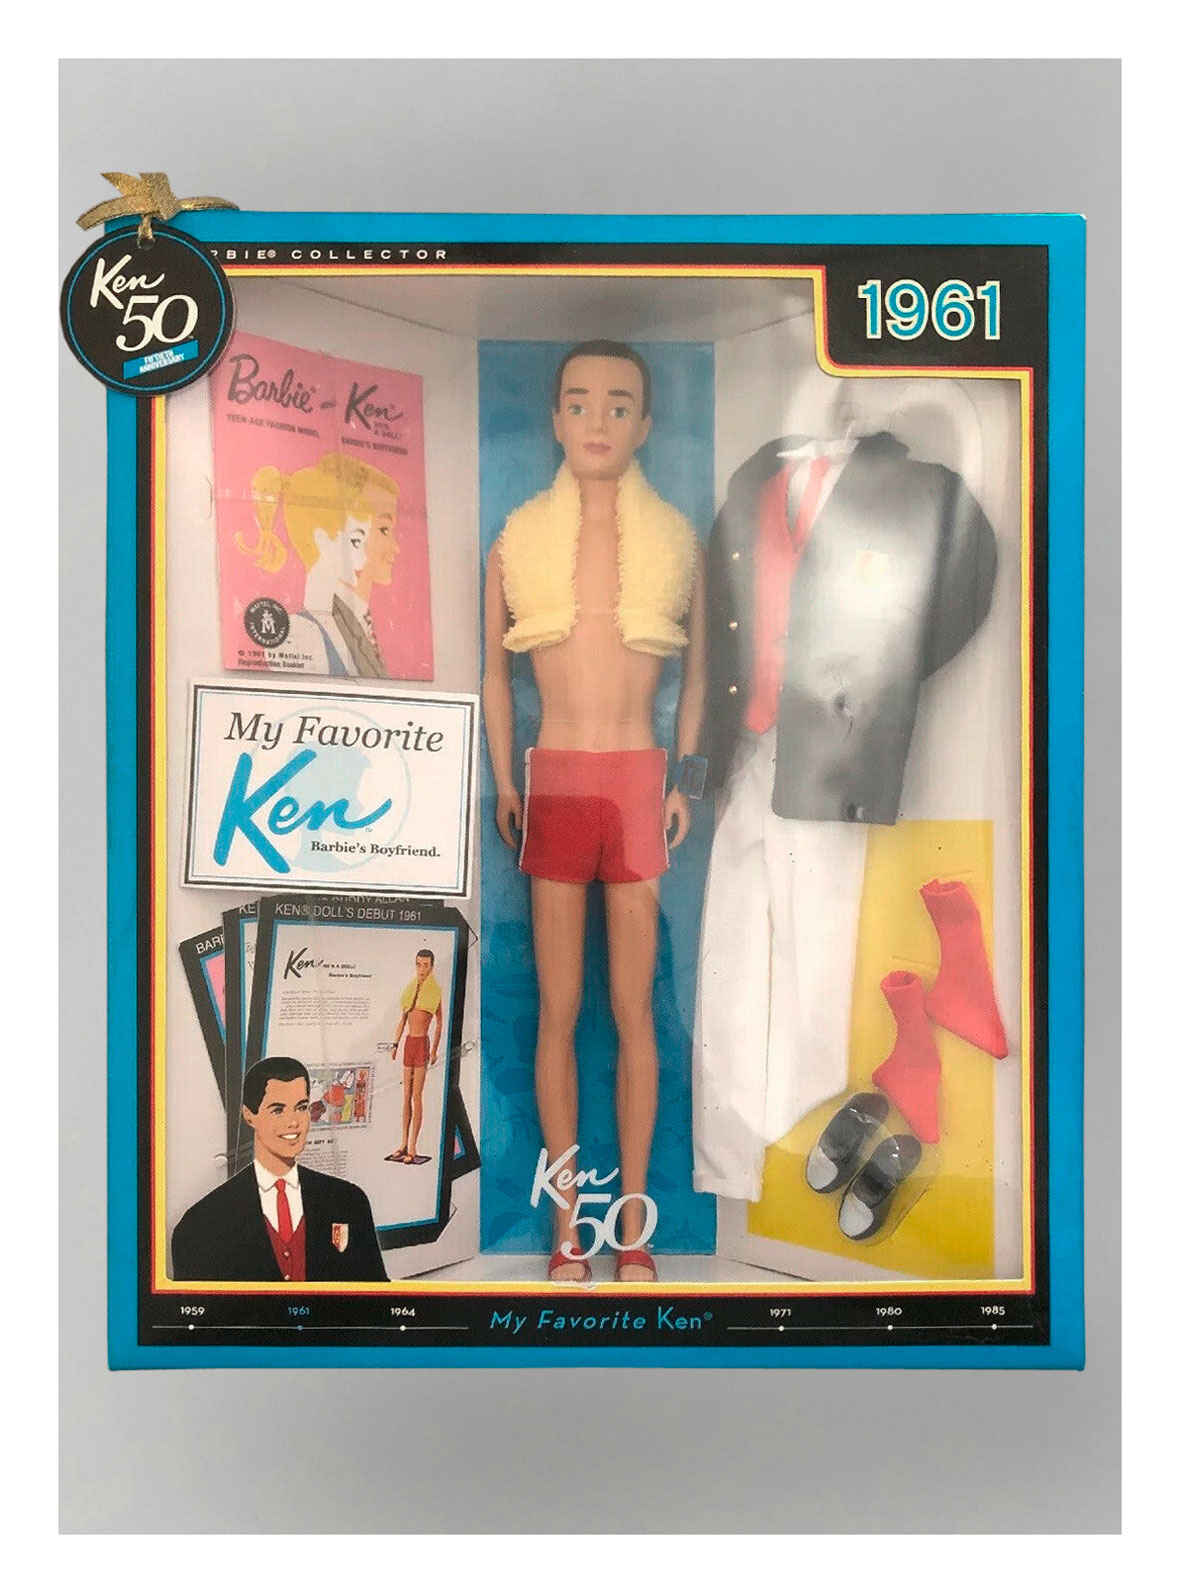 2011 My Favorite Ken (Ken 50th Anniversary) in original packaging